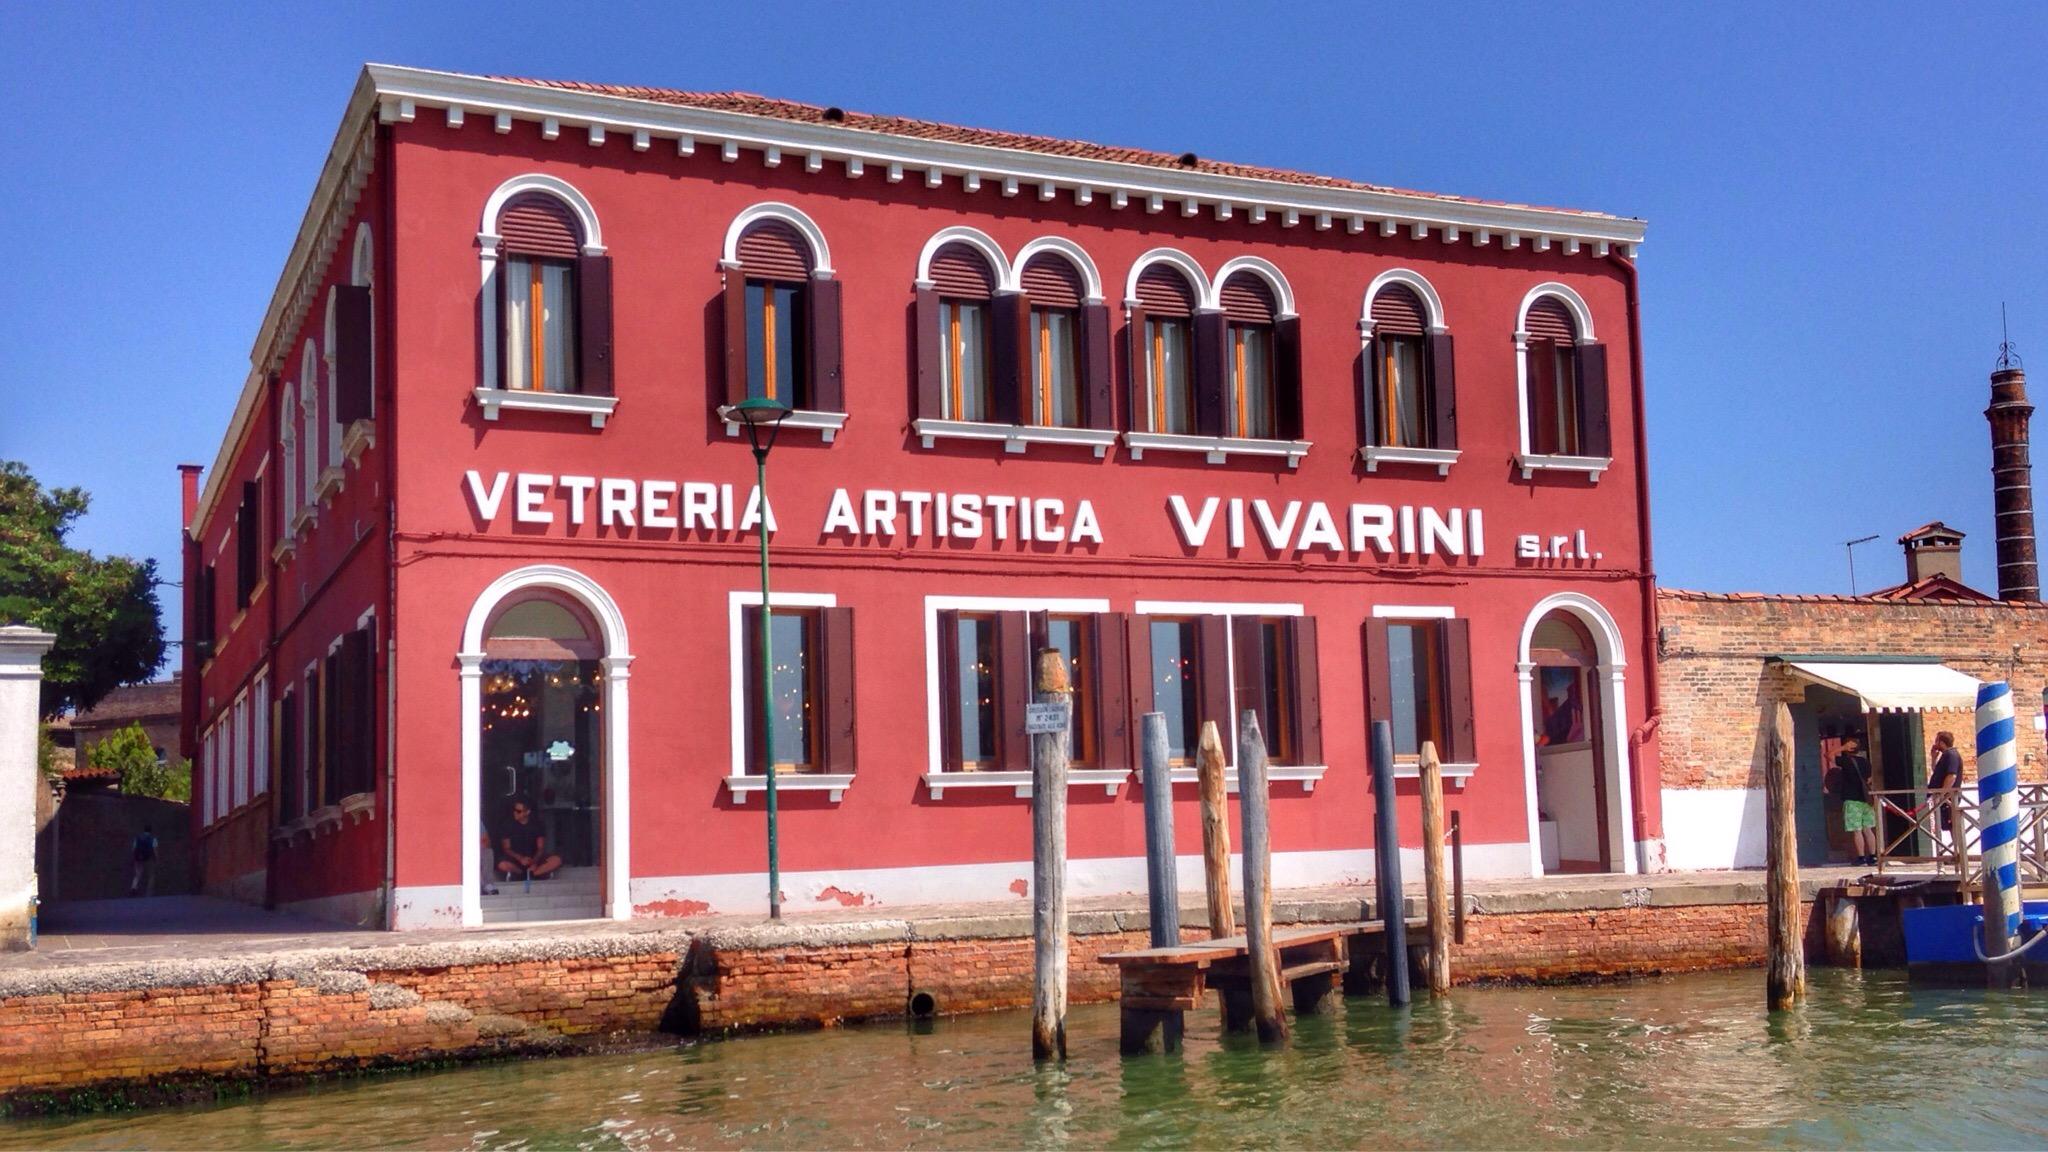 Vetreria Artistica Vivarini